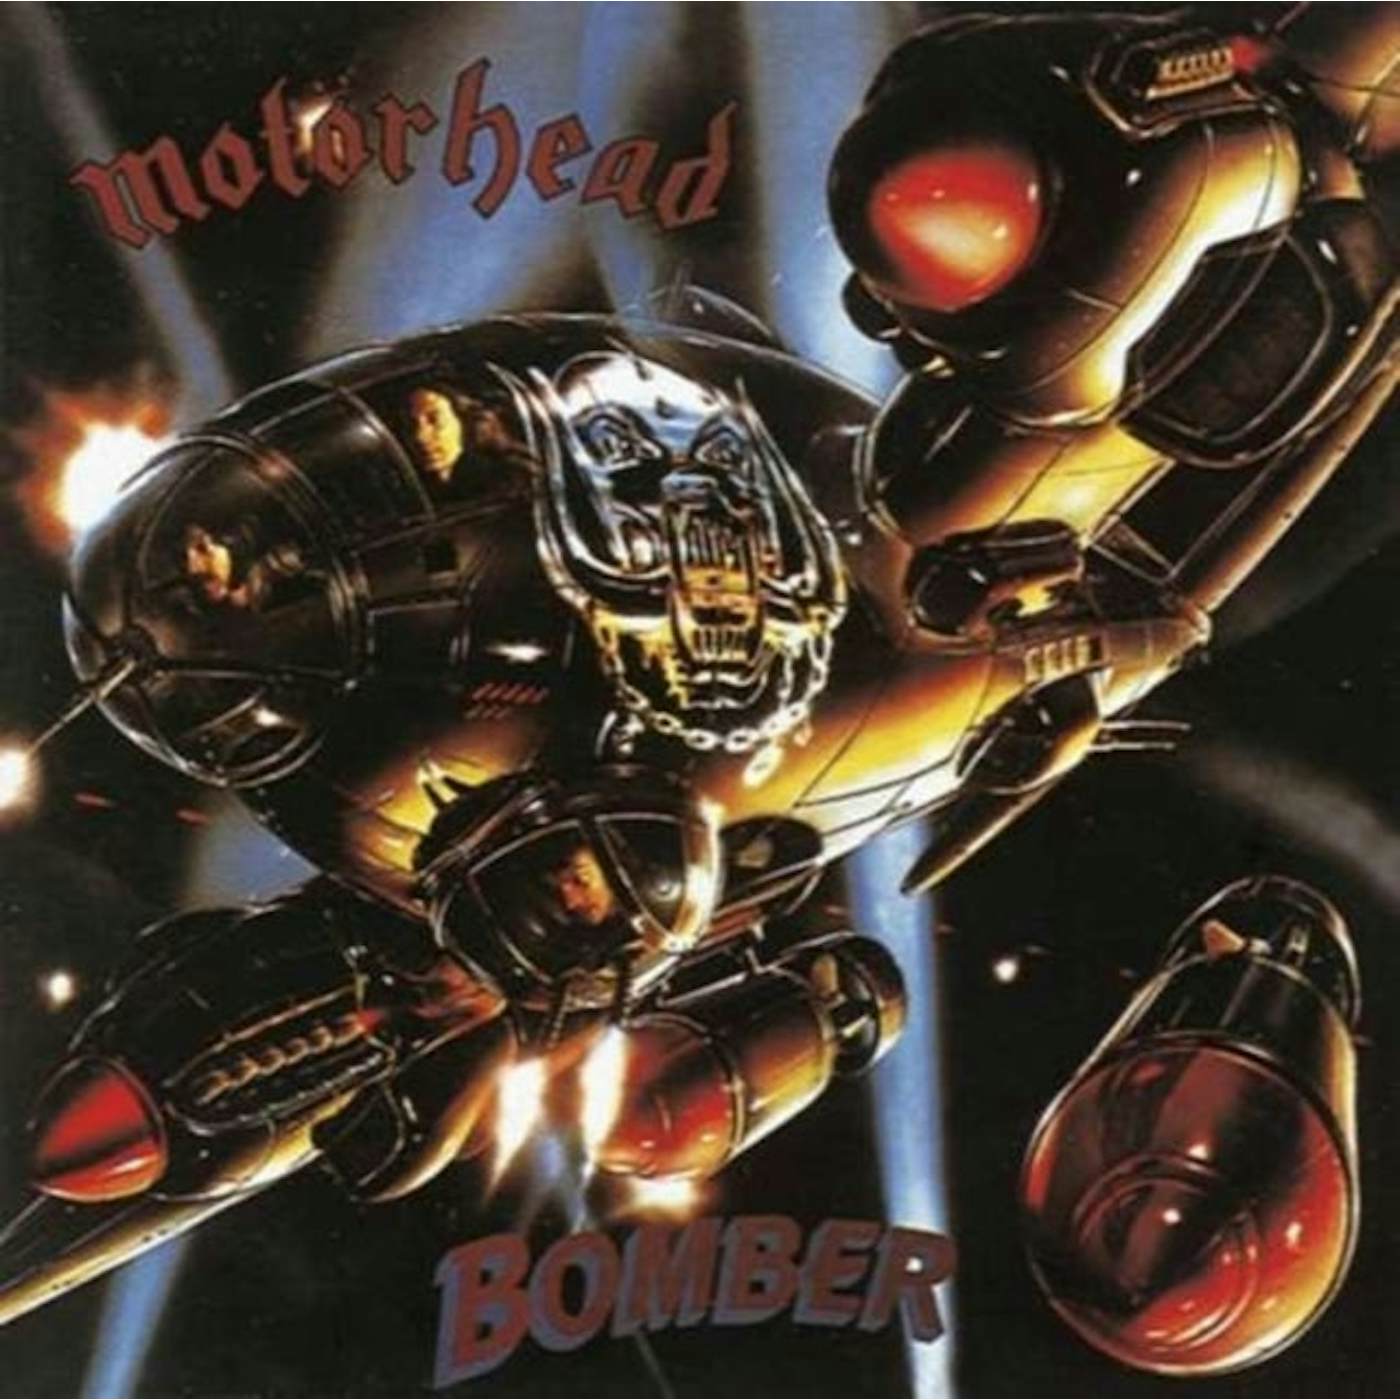 Motörhead LP Vinyl Record - Bomber